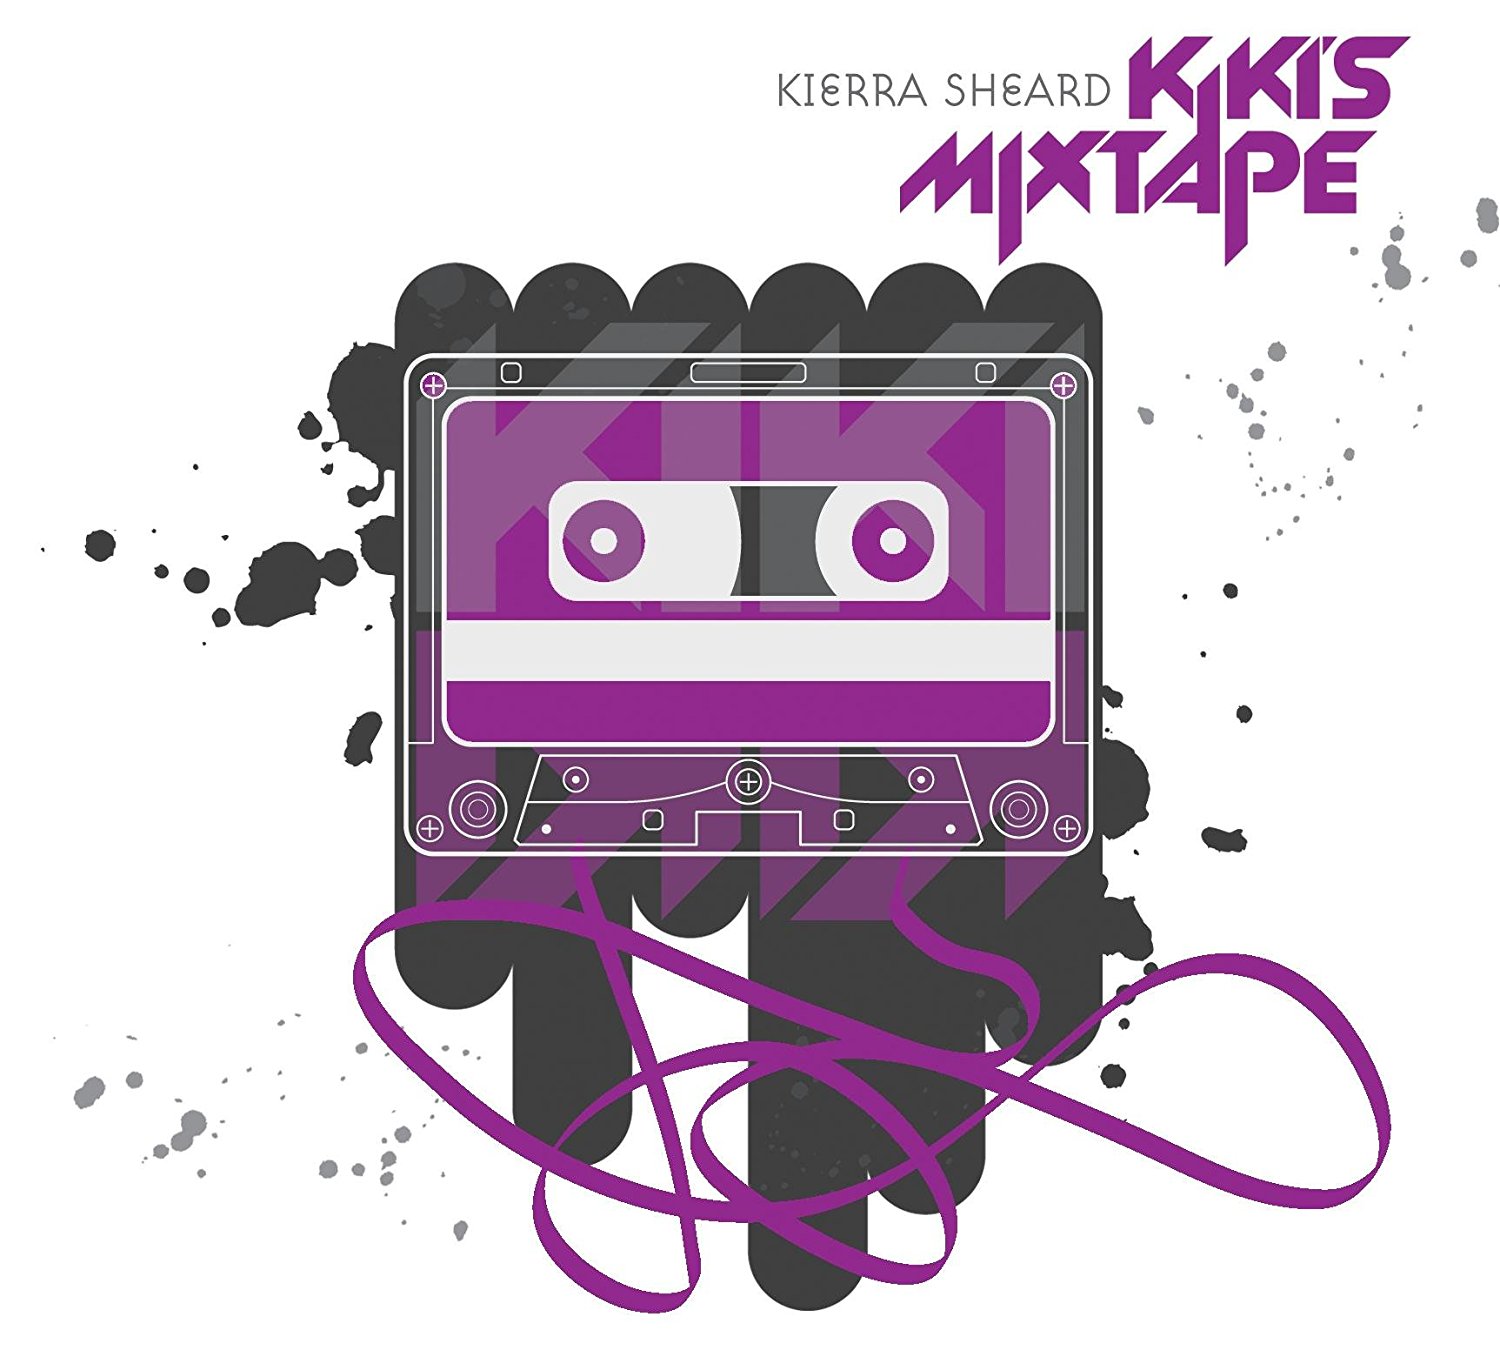 Kierra Sheard - Kiki's Mixtape (CD)